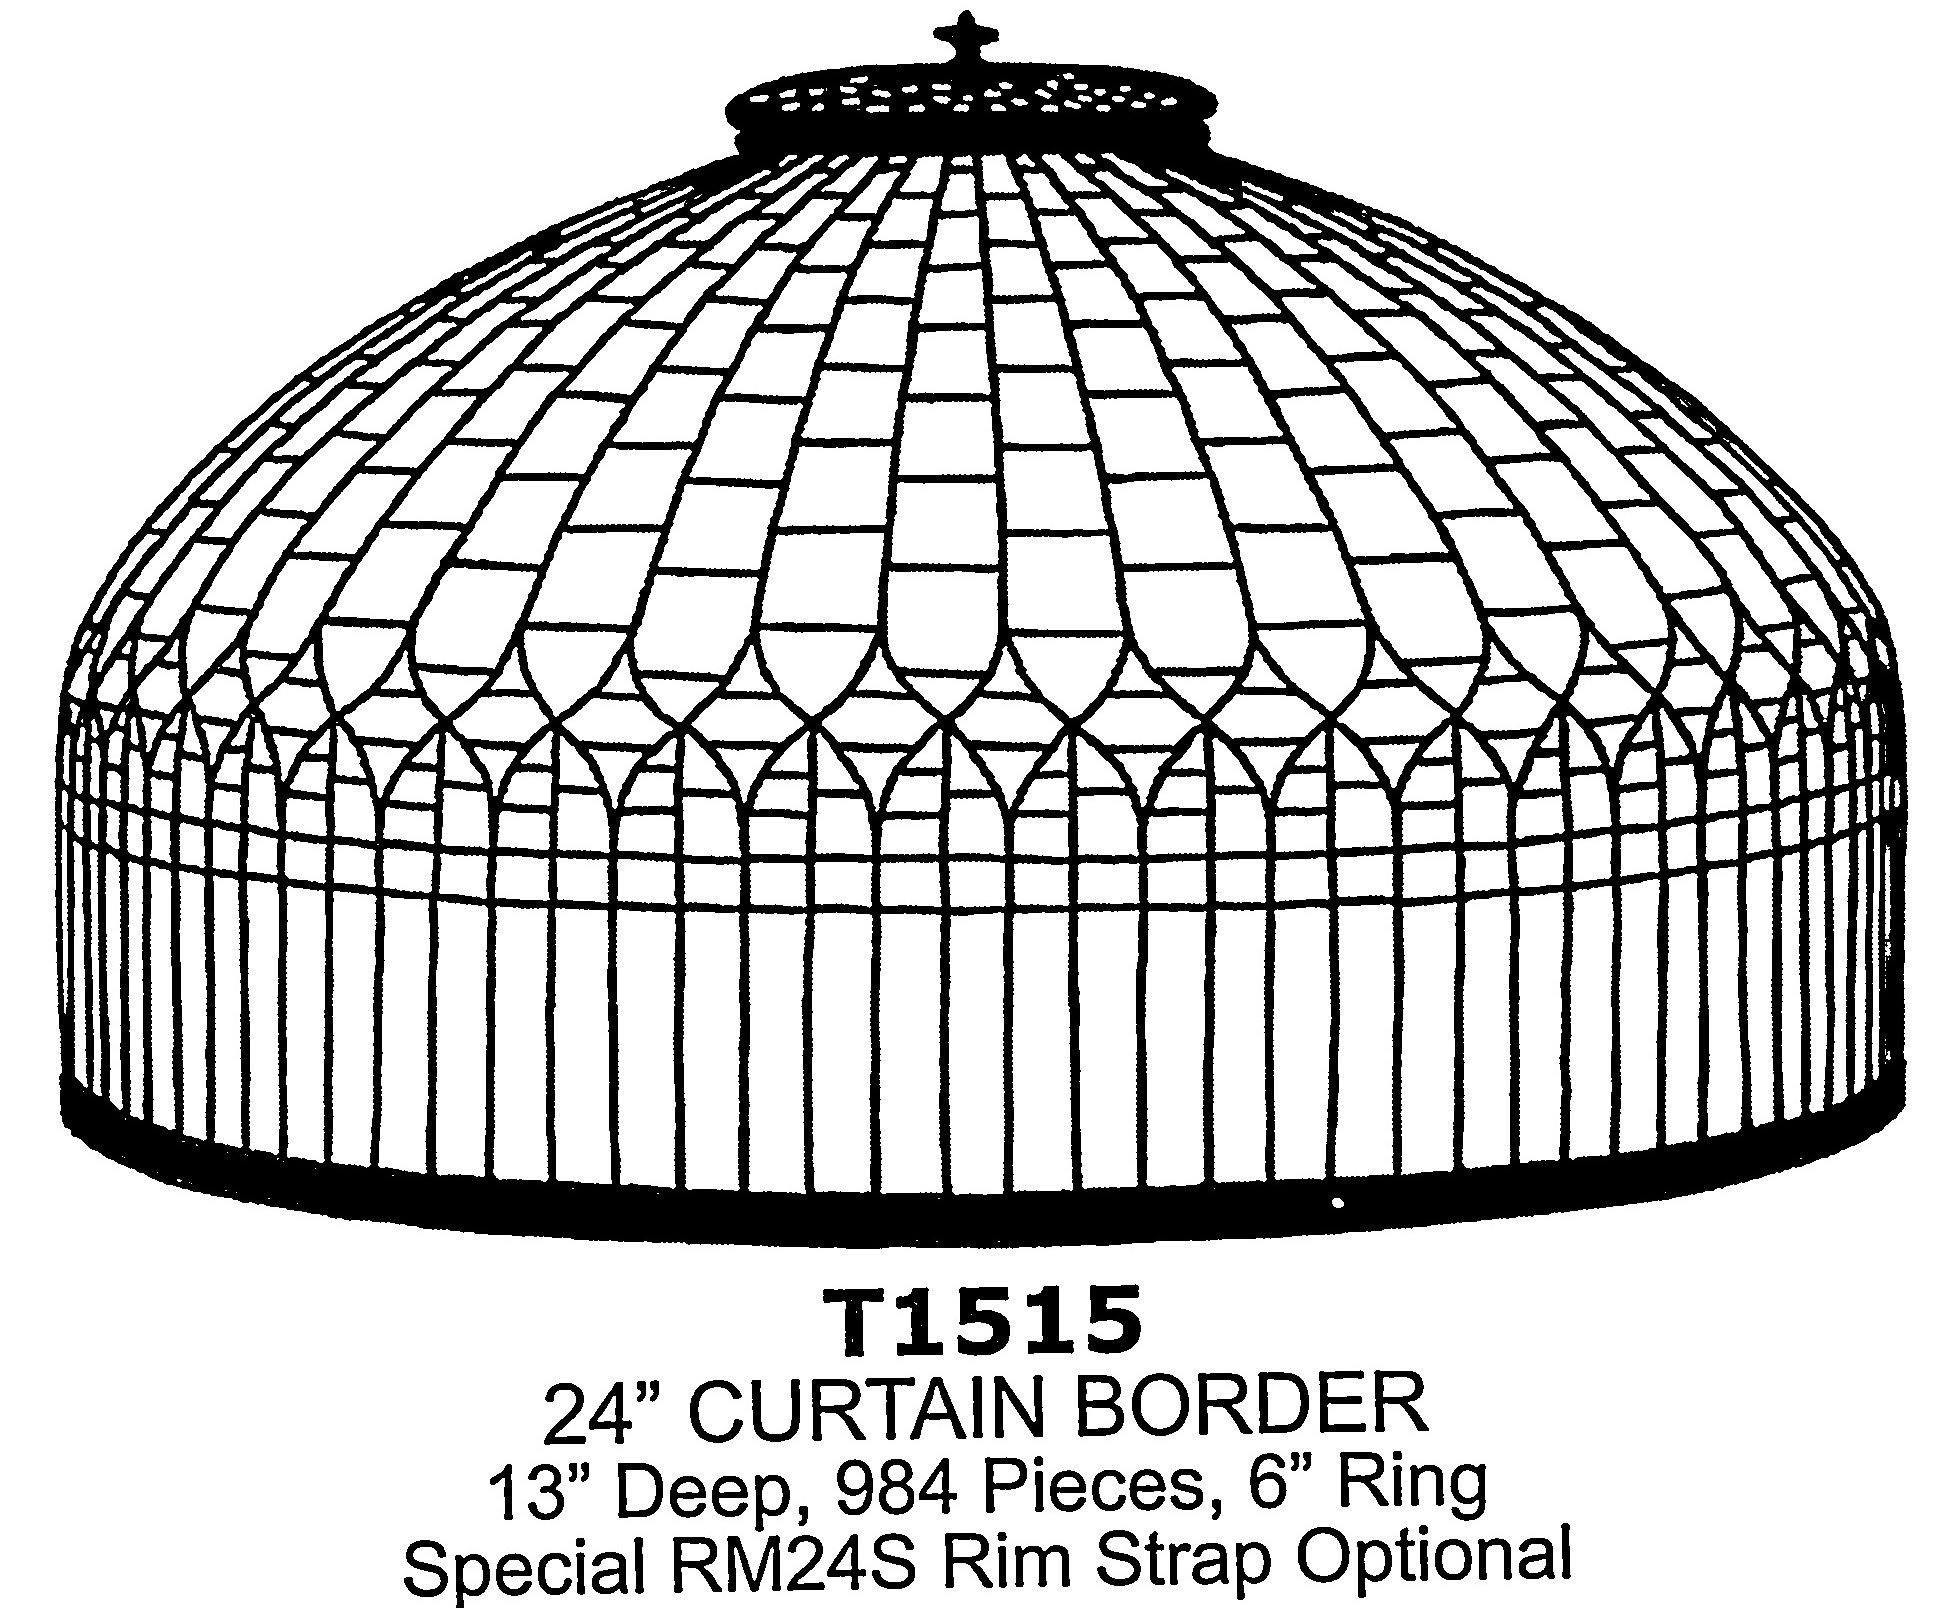 24" Curtain Border